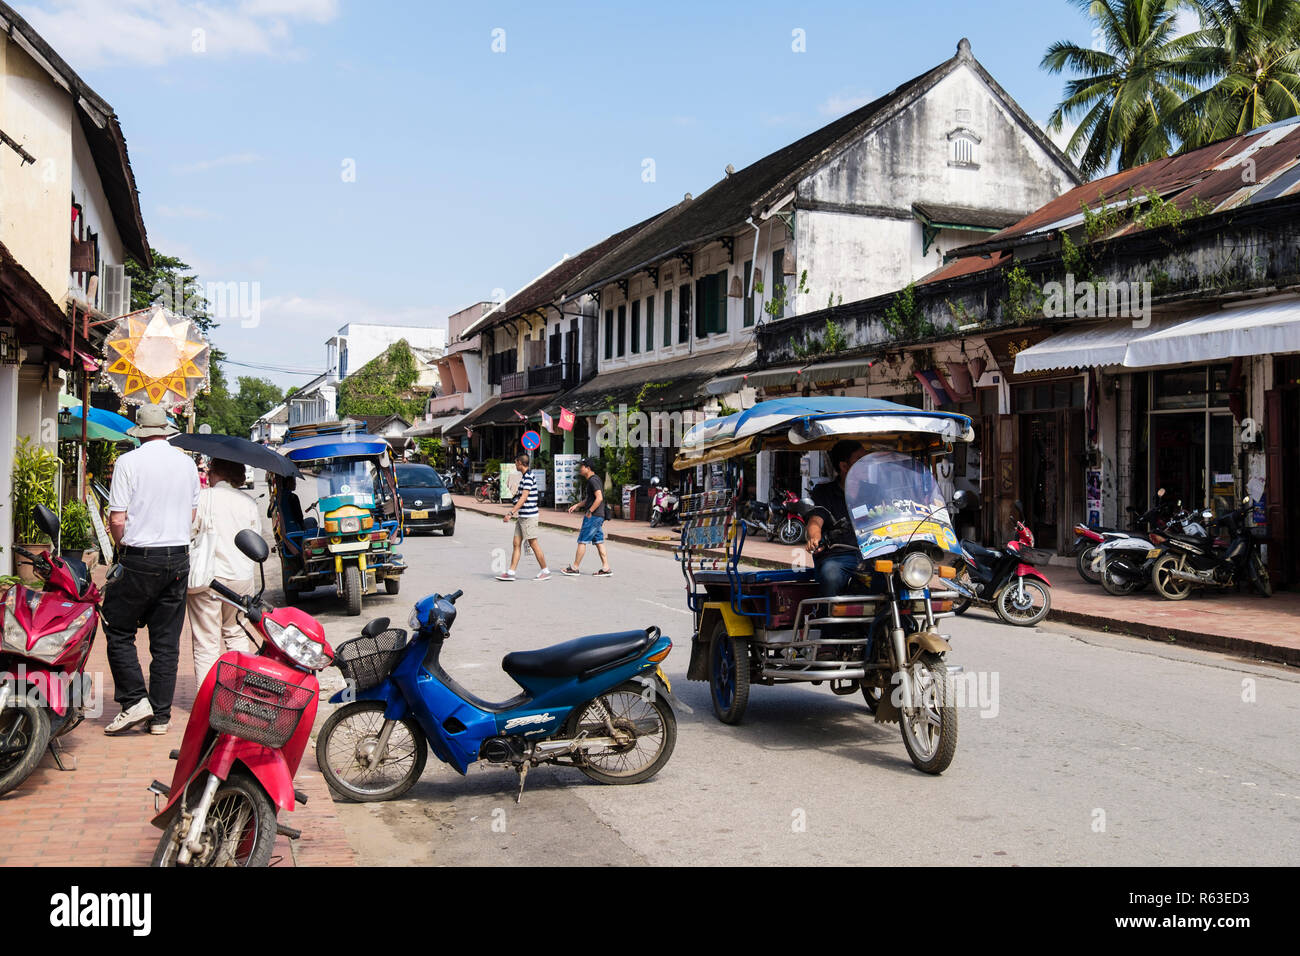 Typische Straßenszene mit Tuk Tuks und Geschäfte im kolonialen Stadtteil der alten Stadt. Sisavangvong Straße, Luang Prabang, Louangphabang Provinz, Laos, Asien Stockfoto